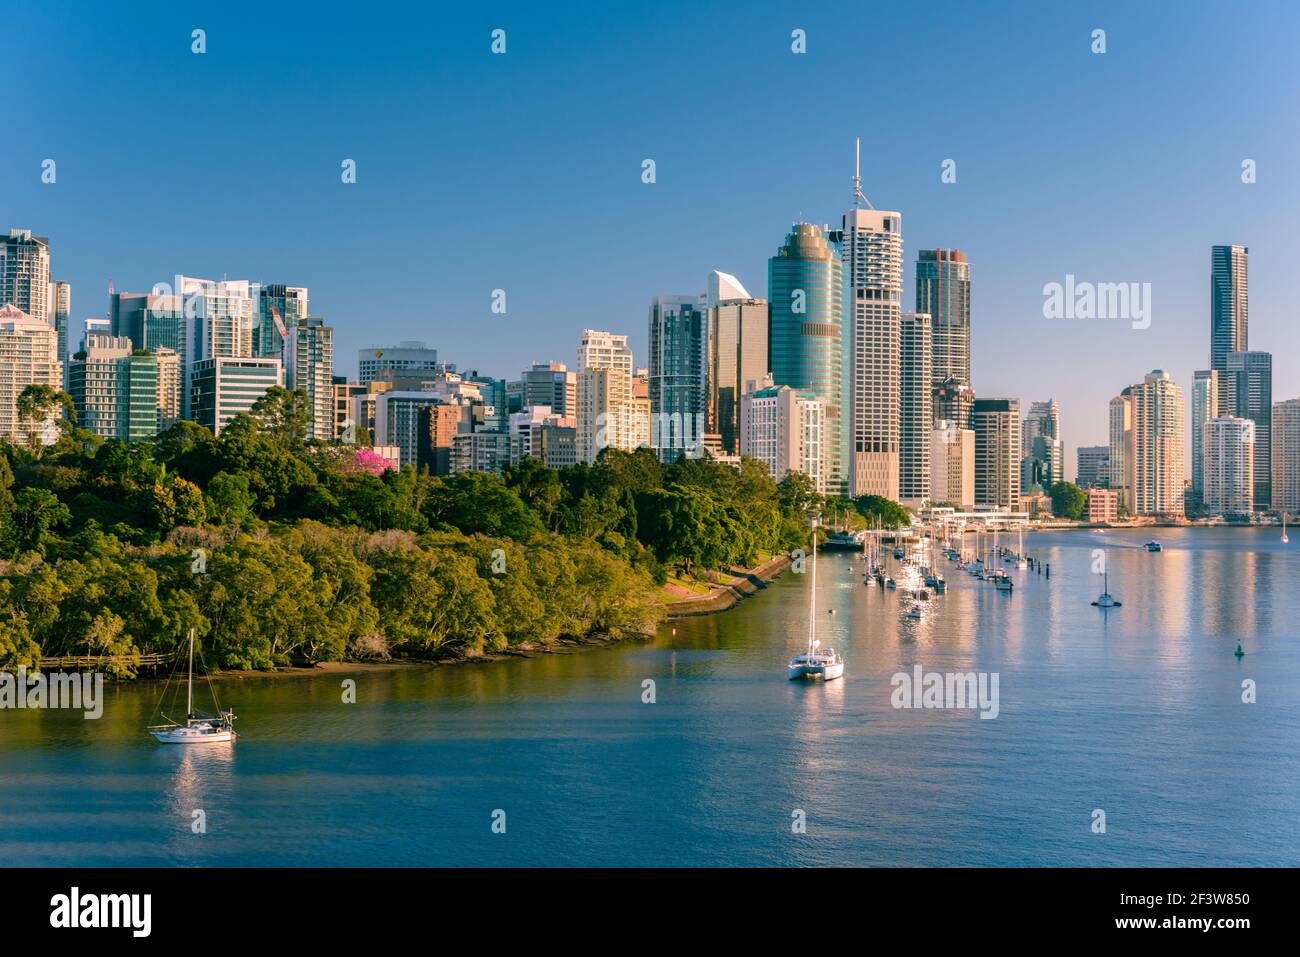 Vue du matin sur la ville et le fleuve de Brisbane depuis Kangaroo point. Brisbane est la capitale de l'État du Queensland, en Australie. Banque D'Images